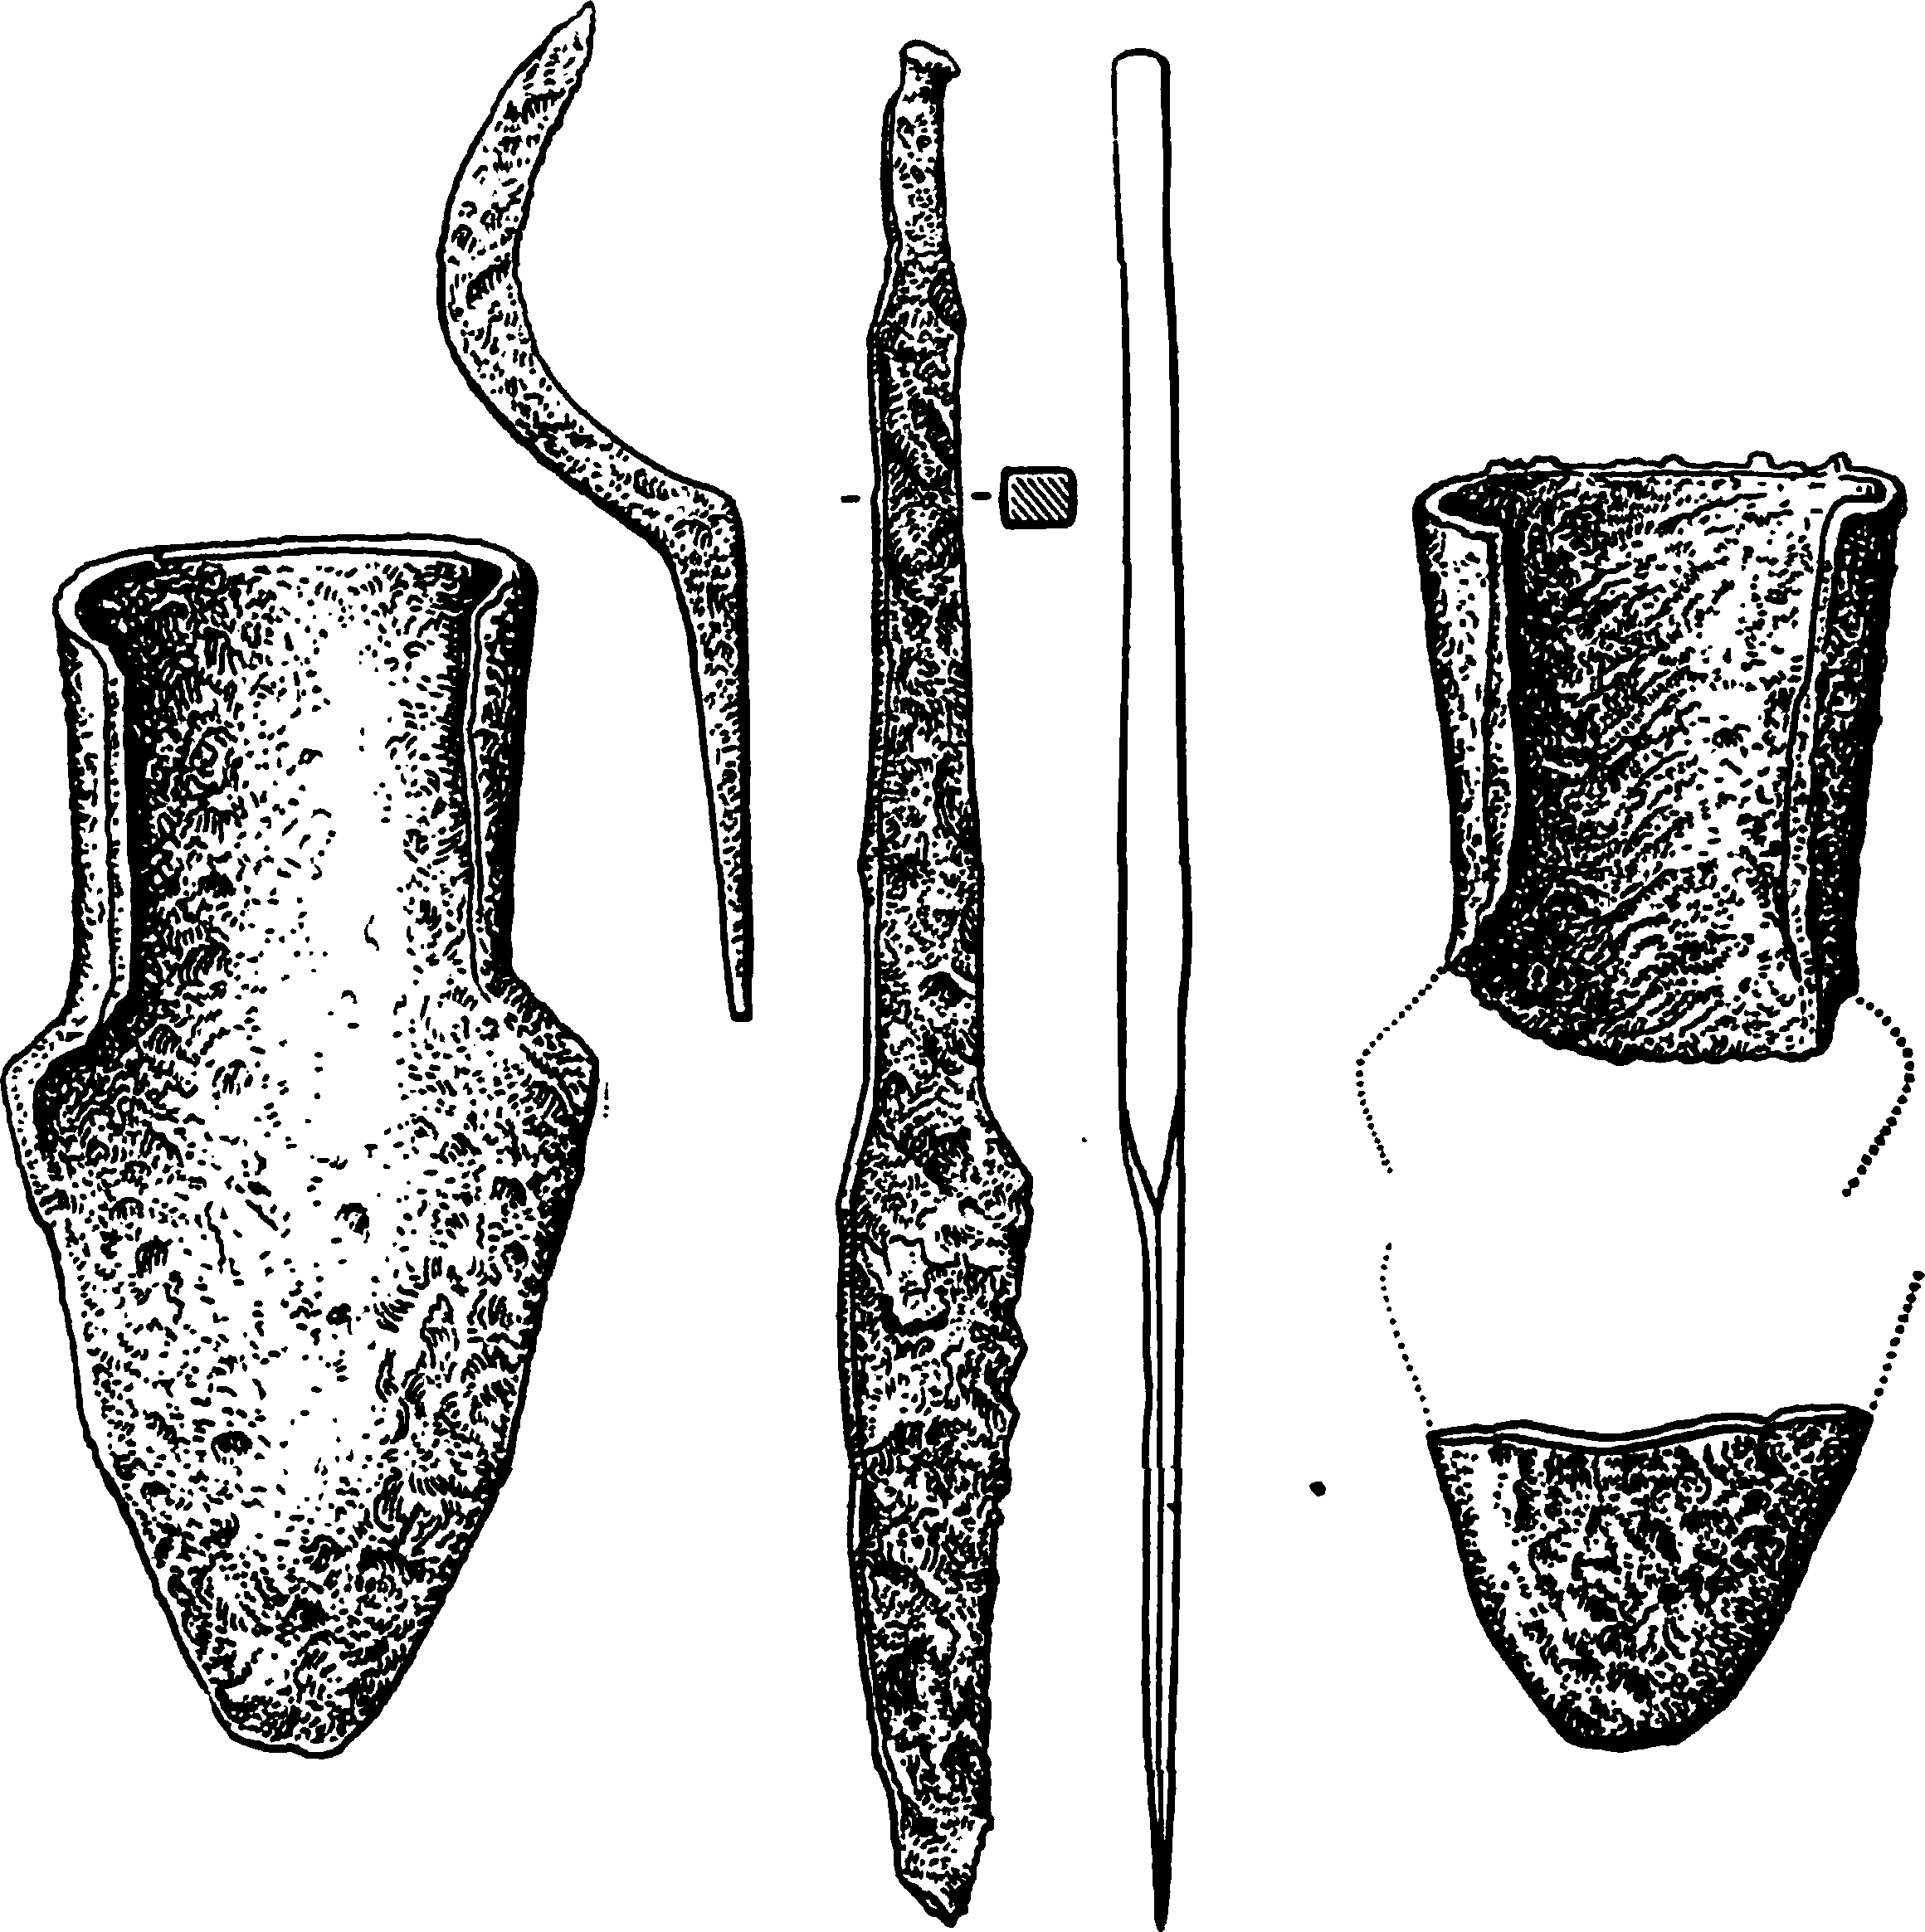 Славянские земледельческие орудия первых веков н. э.: лемех, чересло (плужный нож), серп